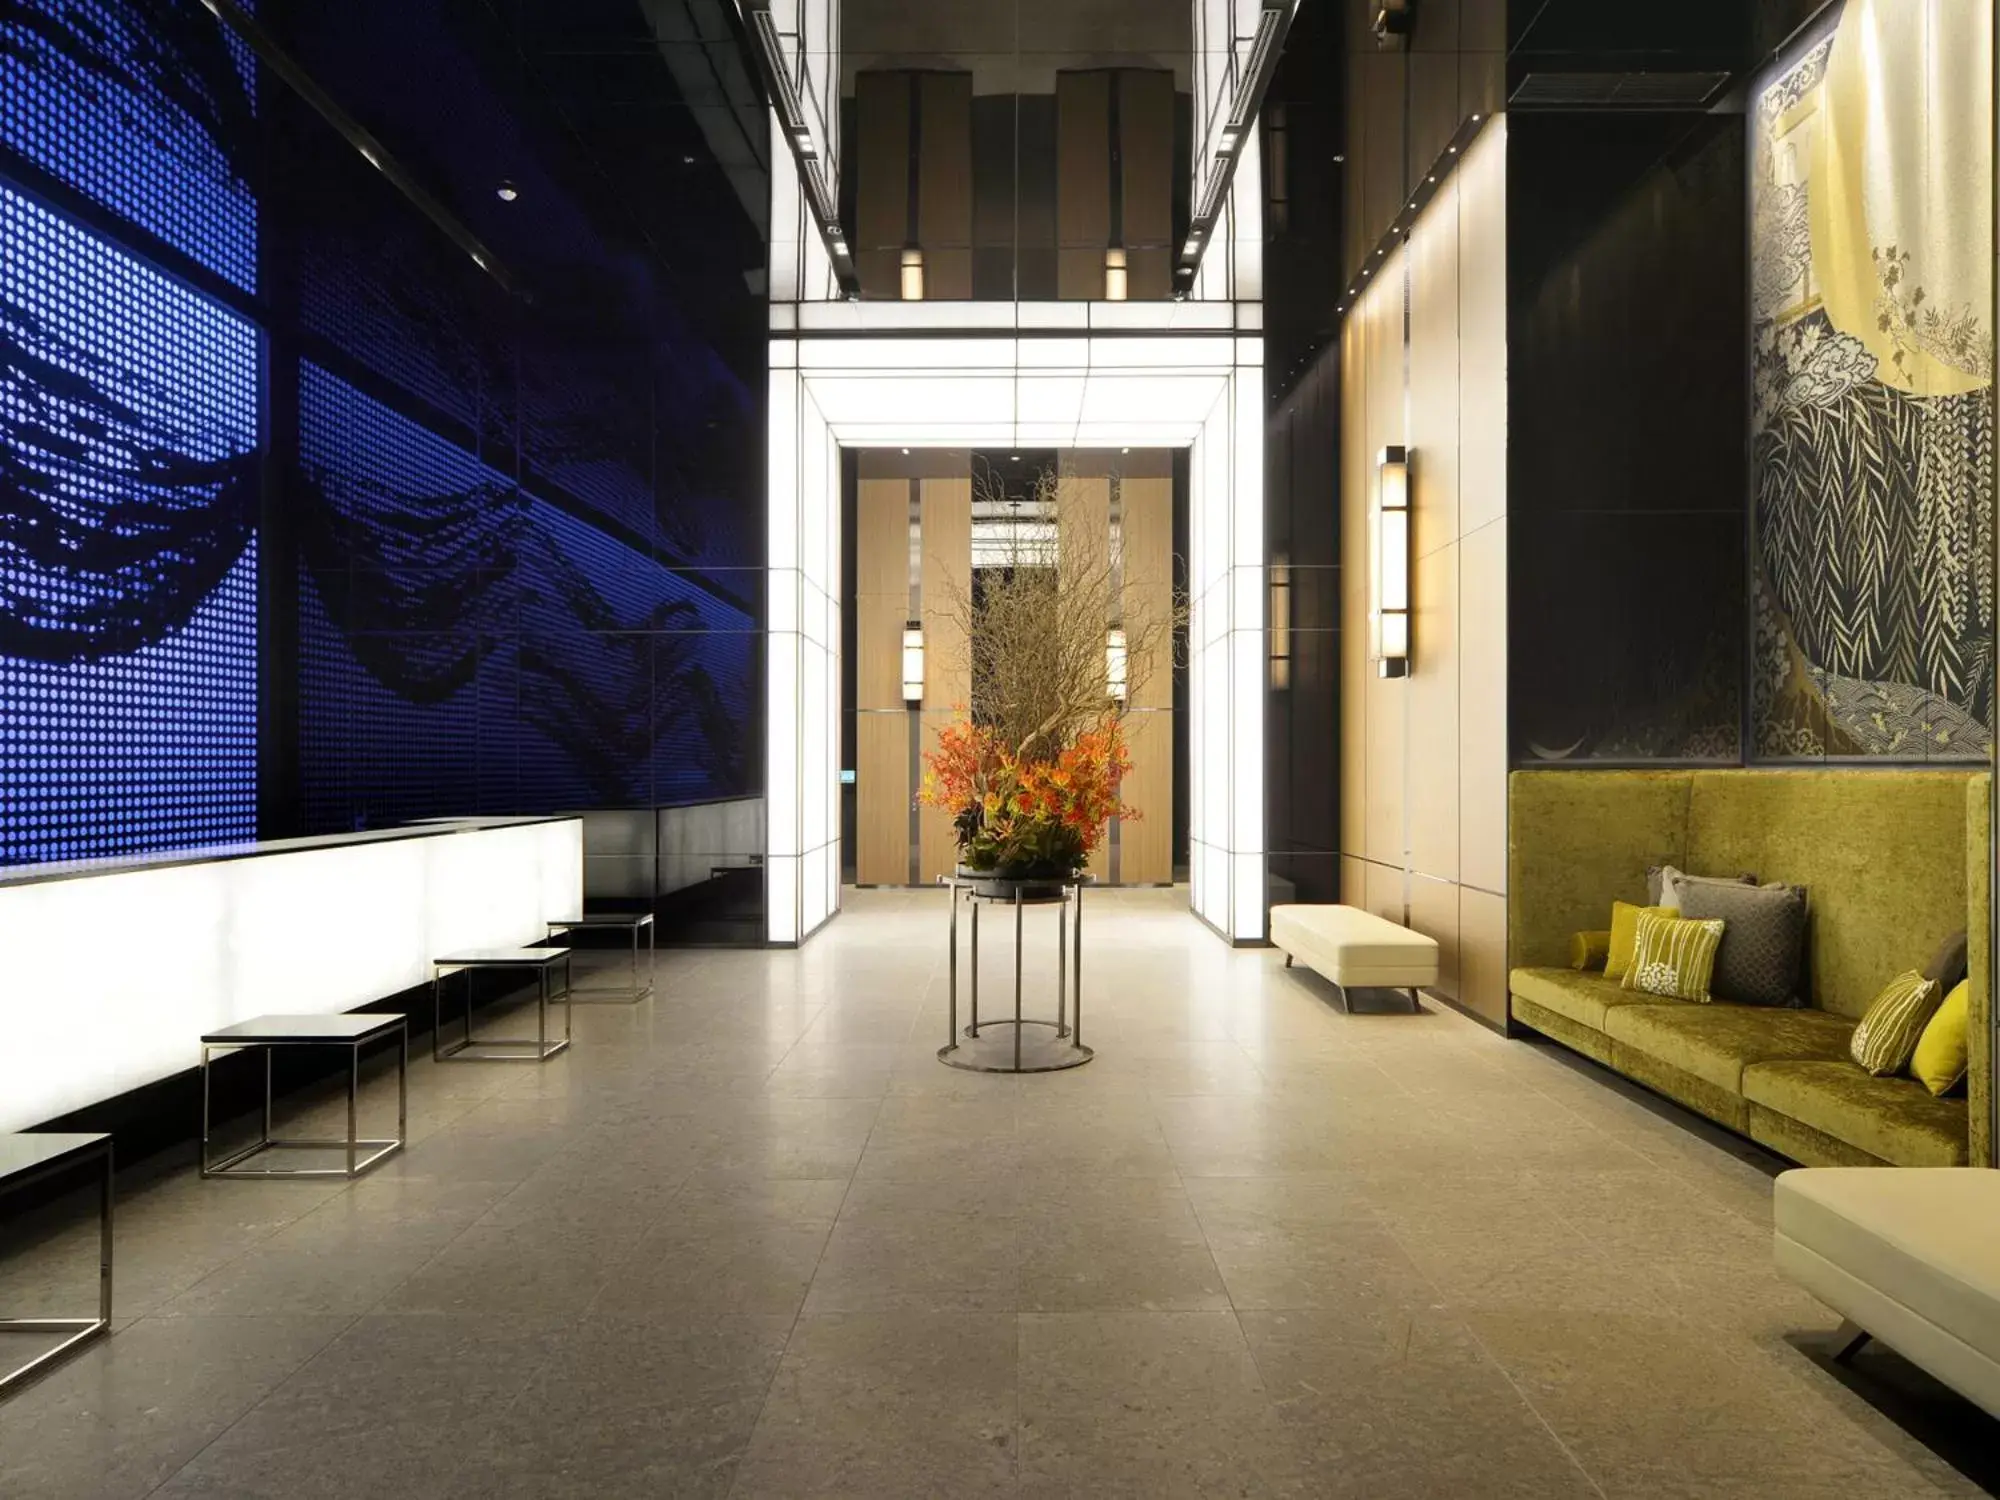 Lobby or reception in Millennium Mitsui Garden Hotel Tokyo